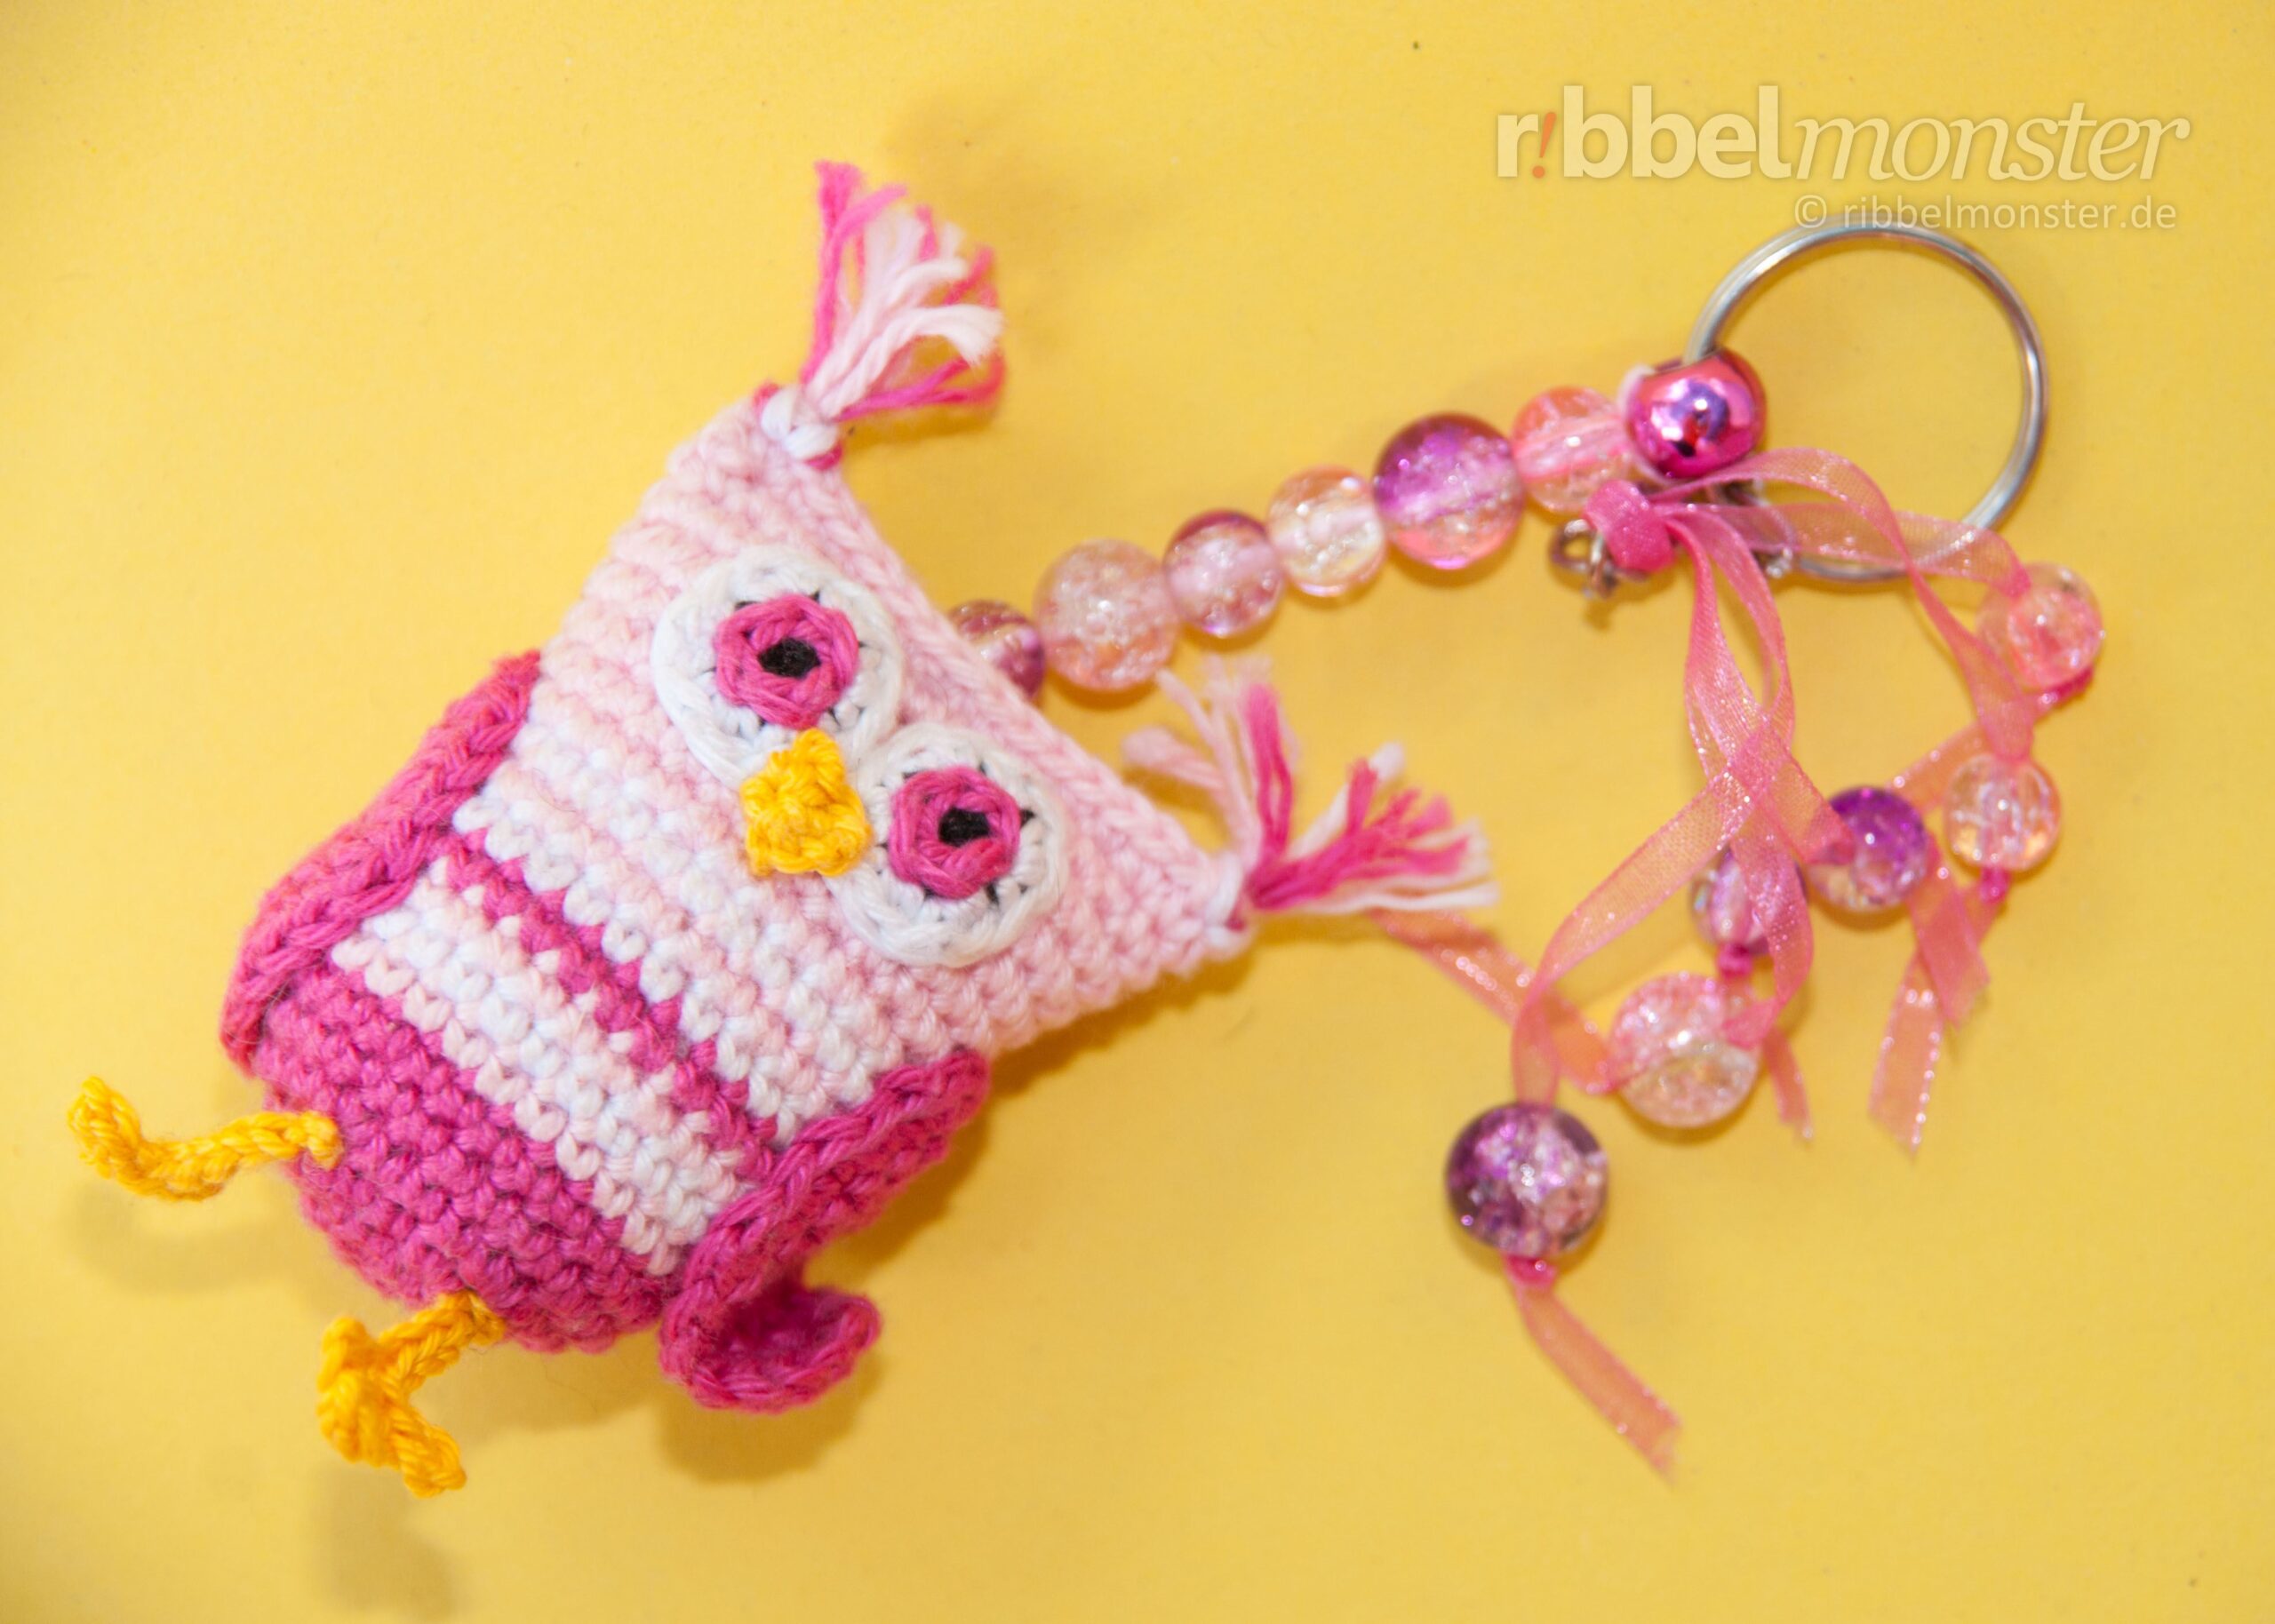 Amigurumi – Crochet Owl “Ella”